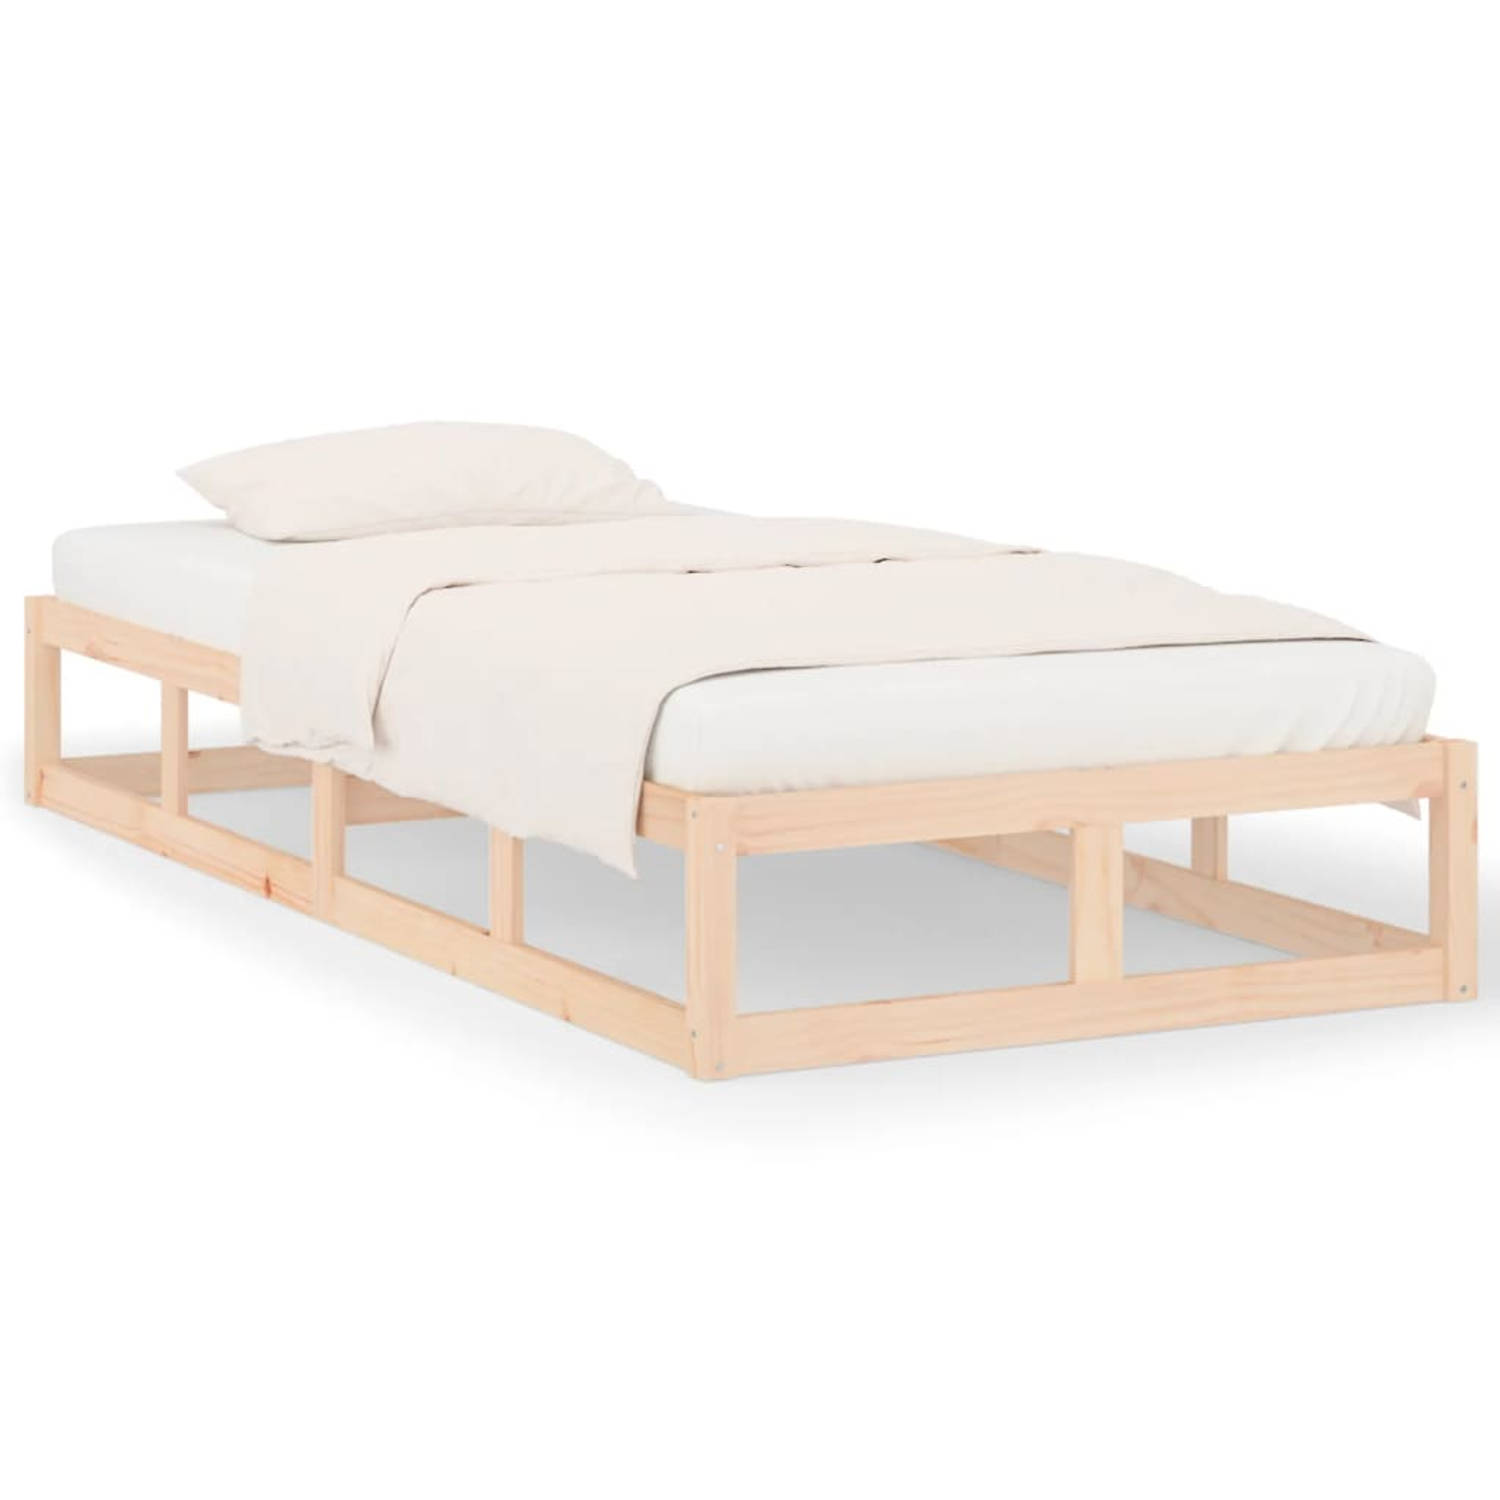 The Living Store Bedframe massief hout 100x200 cm - Bedframe - Bedframes - Bed - Bedbodem - Ledikant - Bed Frame - Massief Houten Bedframe - Slaapmeubel - Eenpersoonsbed - Bedden -